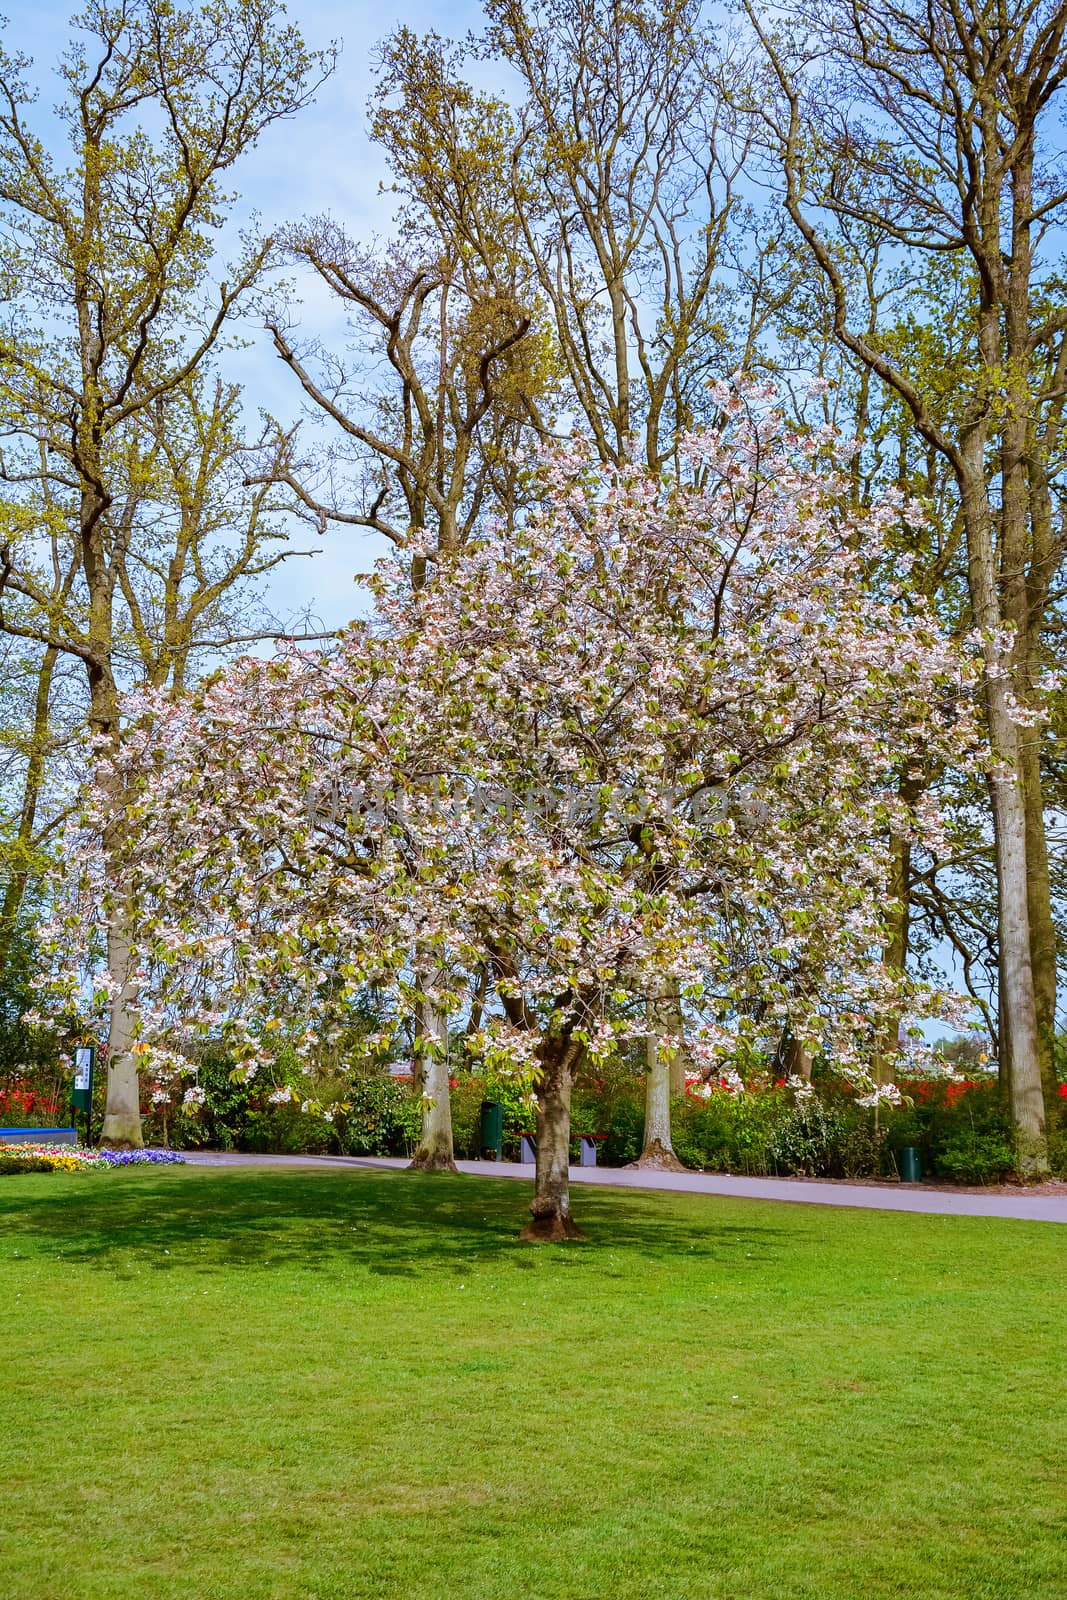 Flowering tree in spring in the park